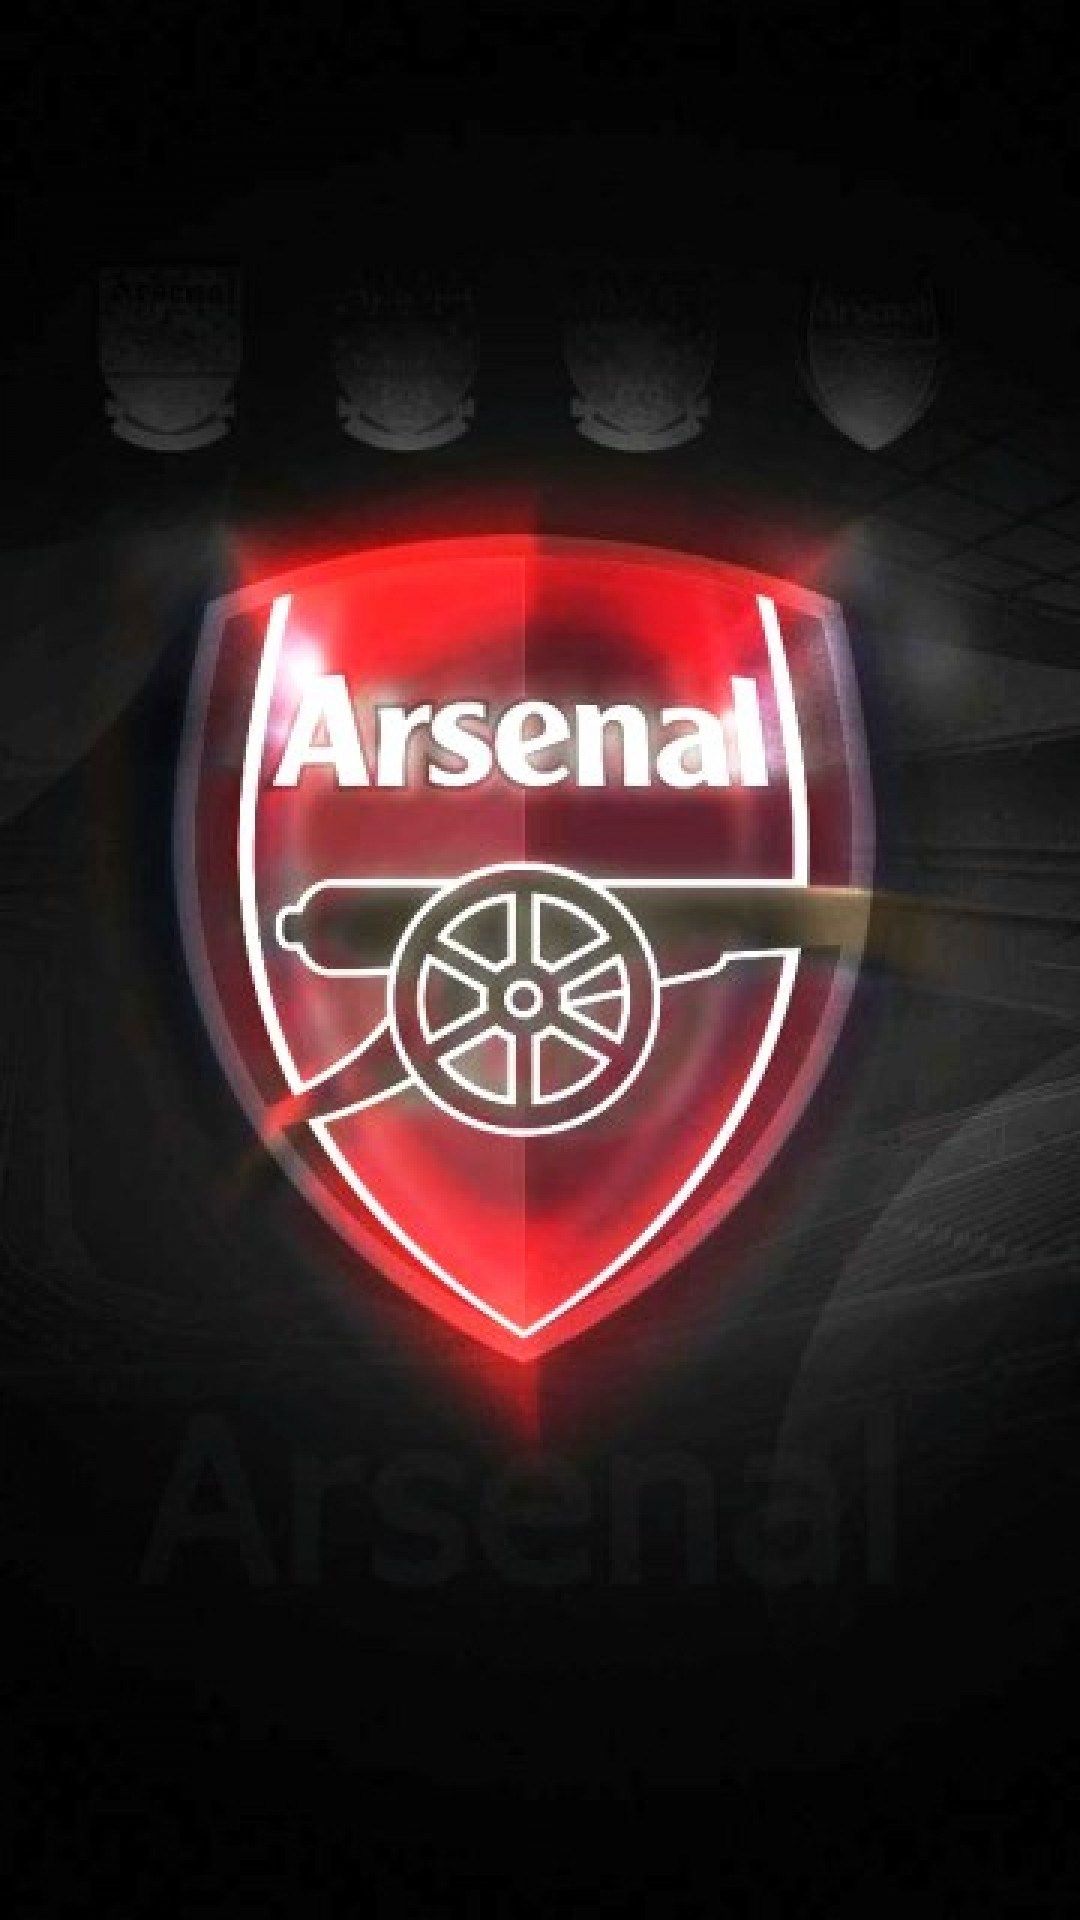 arsenal logo wallpaper full hd for mobile ololoshenka Arsenal 1080x1920